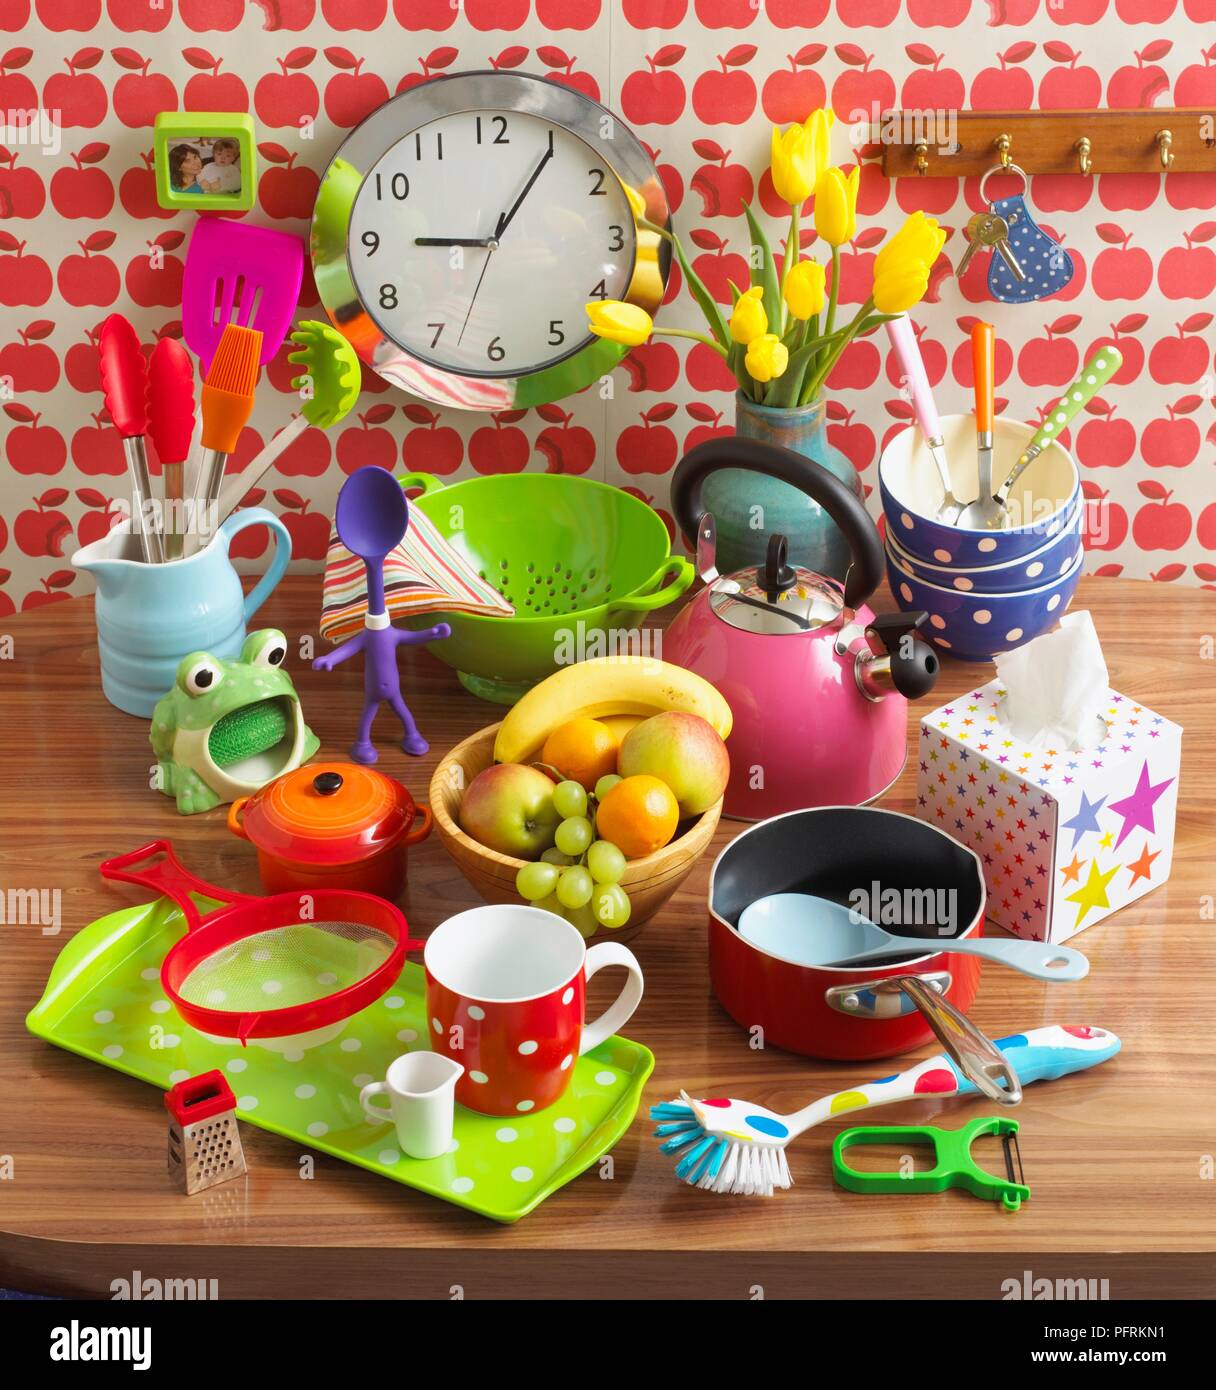 Spielzeug, Geschirr, Wasserkocher, Schüssel mit Obst, Blumen und die Uhr an der Wand in der Küche Stockfoto